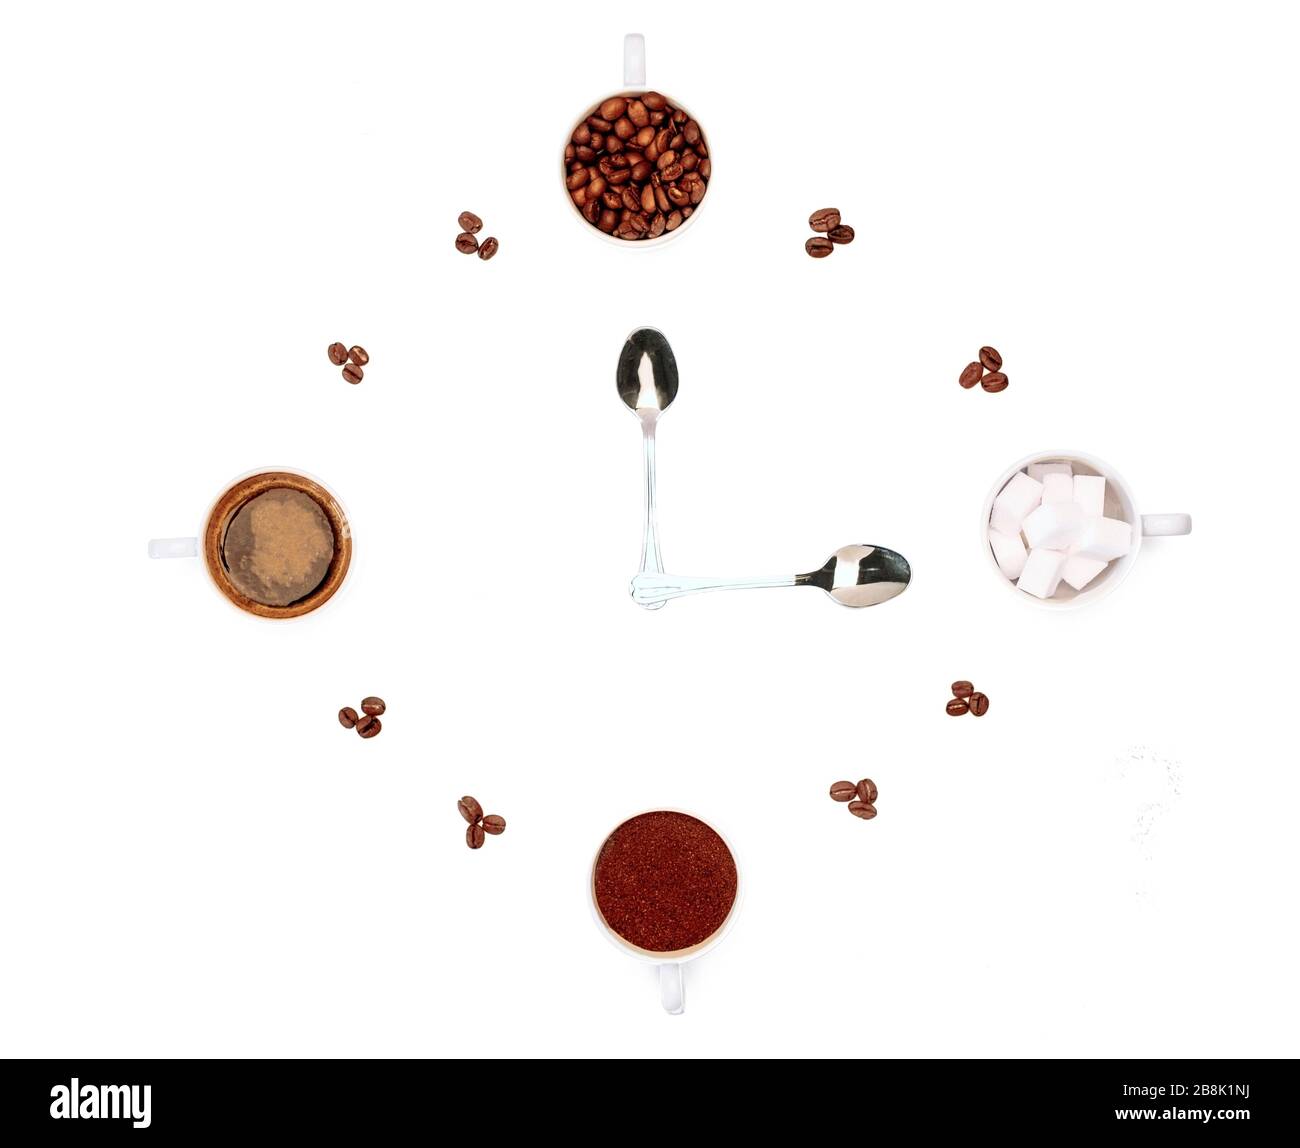 Kreative Stillleben von Kaffee und seinen Zutaten, die eine Uhr zeichnen Stockfoto